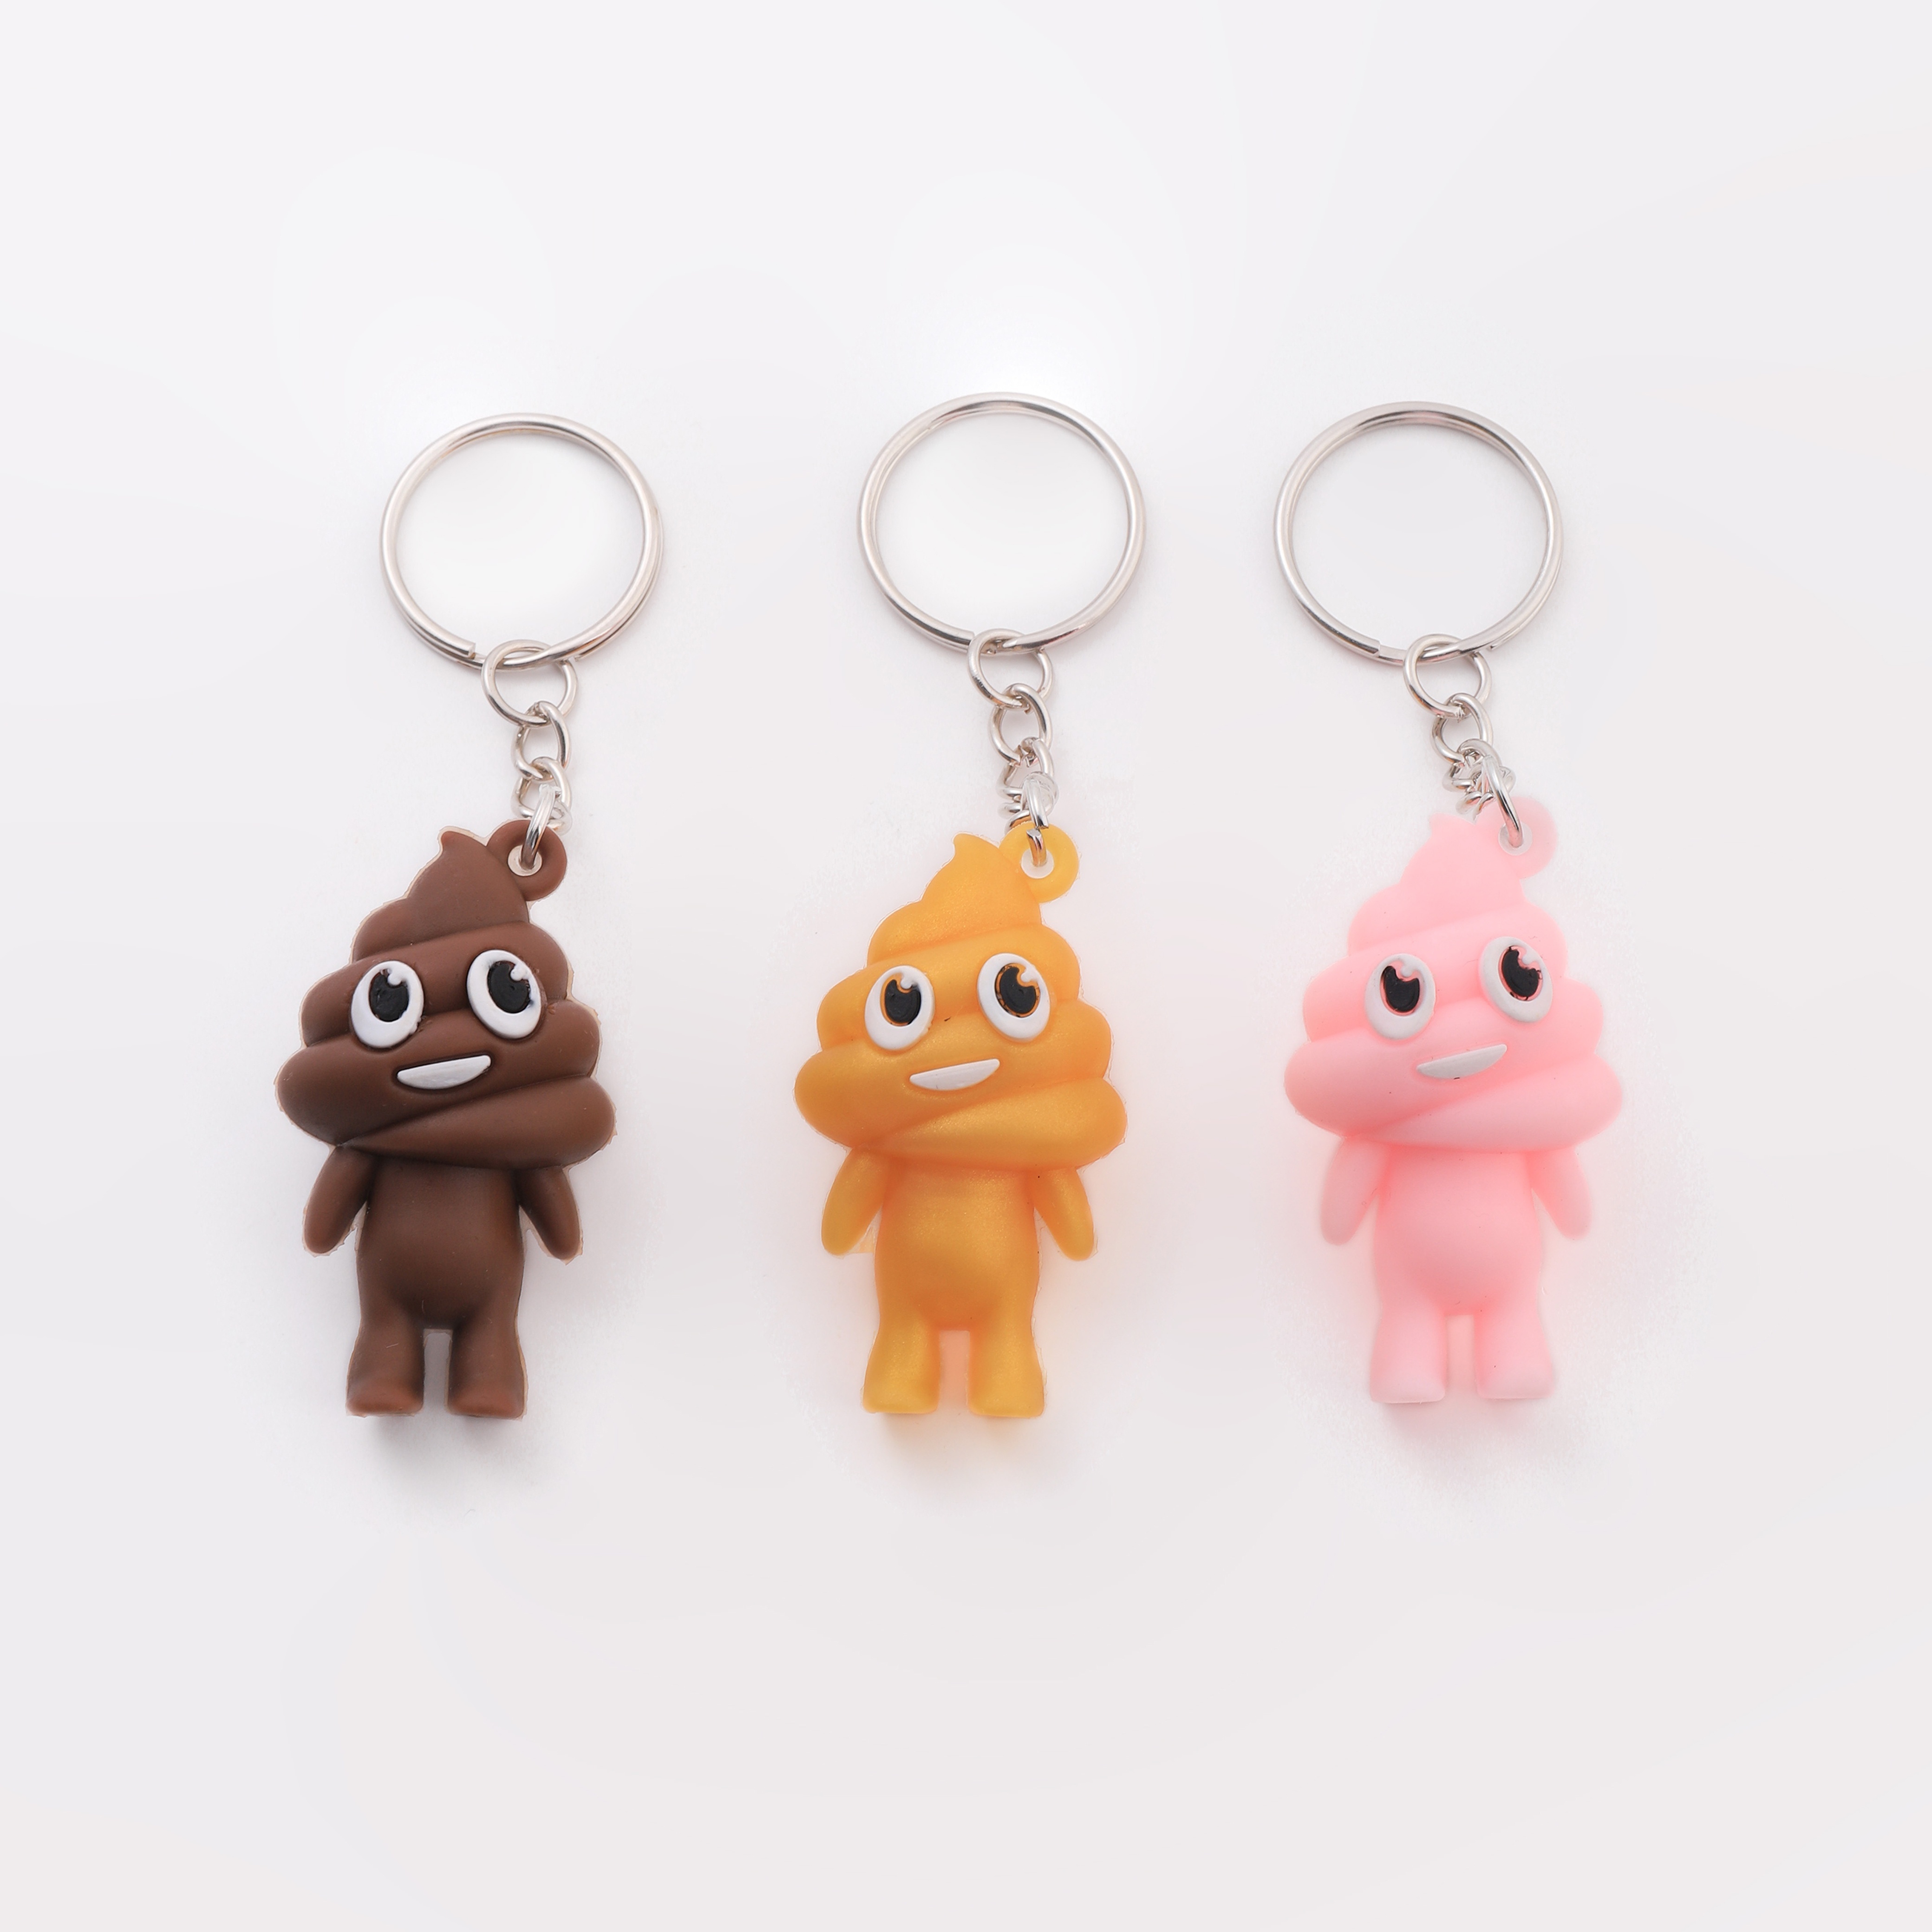 

3pcs Cartoon Poo Keychain Cute Fun Key Chain Ring Purse Bag Backpack Charm Creative Party Supplies Friends Gift